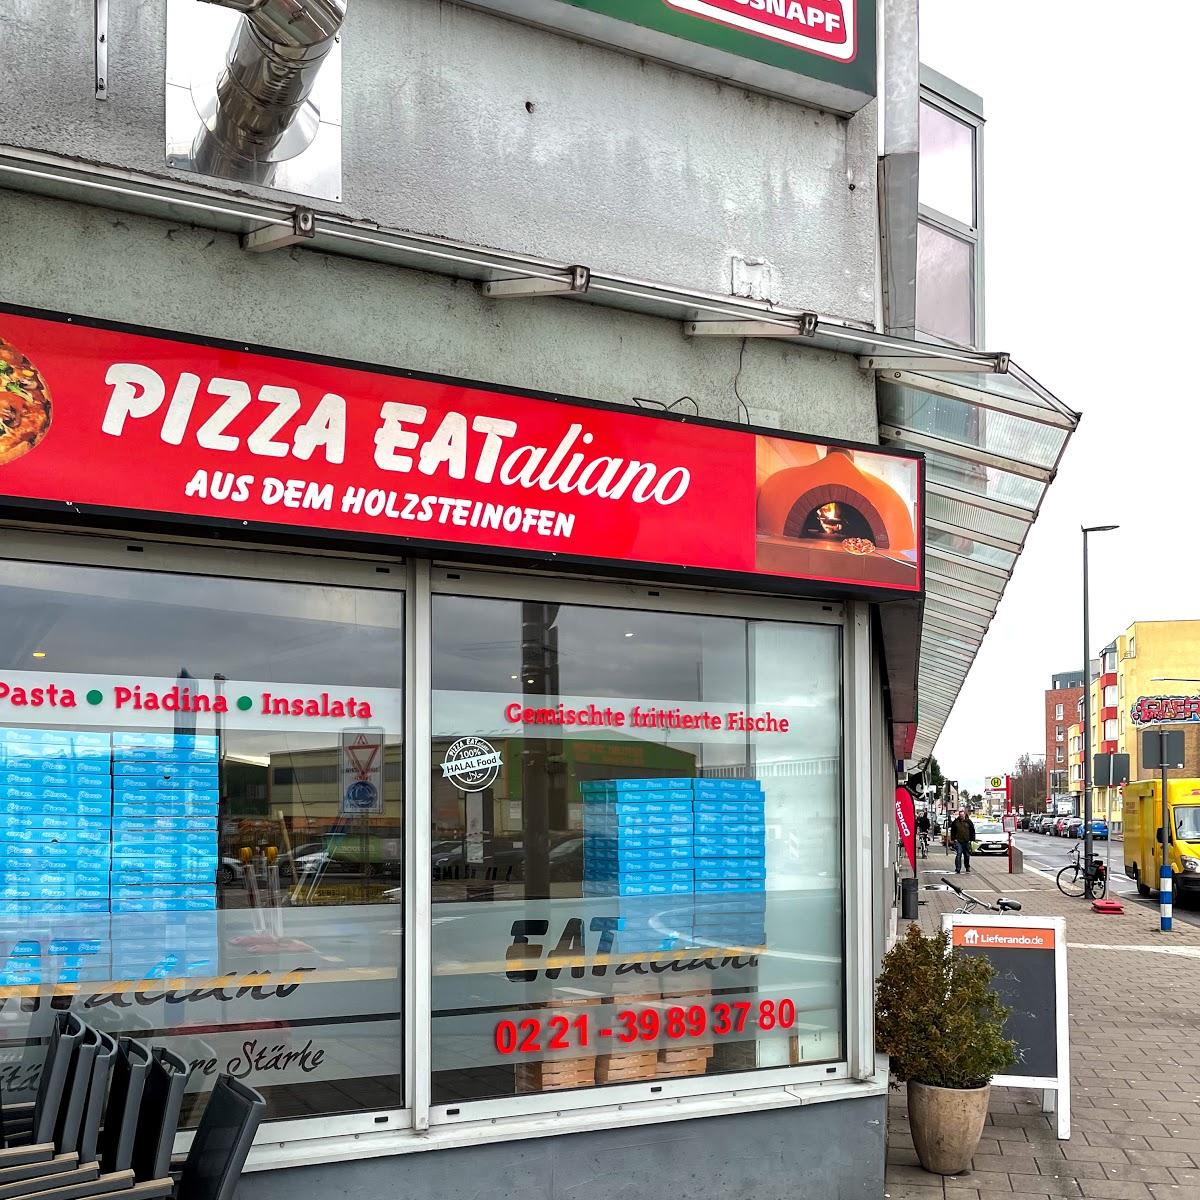 Restaurant "Pizza EATaliano Holzsteinofen - Pizza, Pasta in Köln Südstadt" in Köln